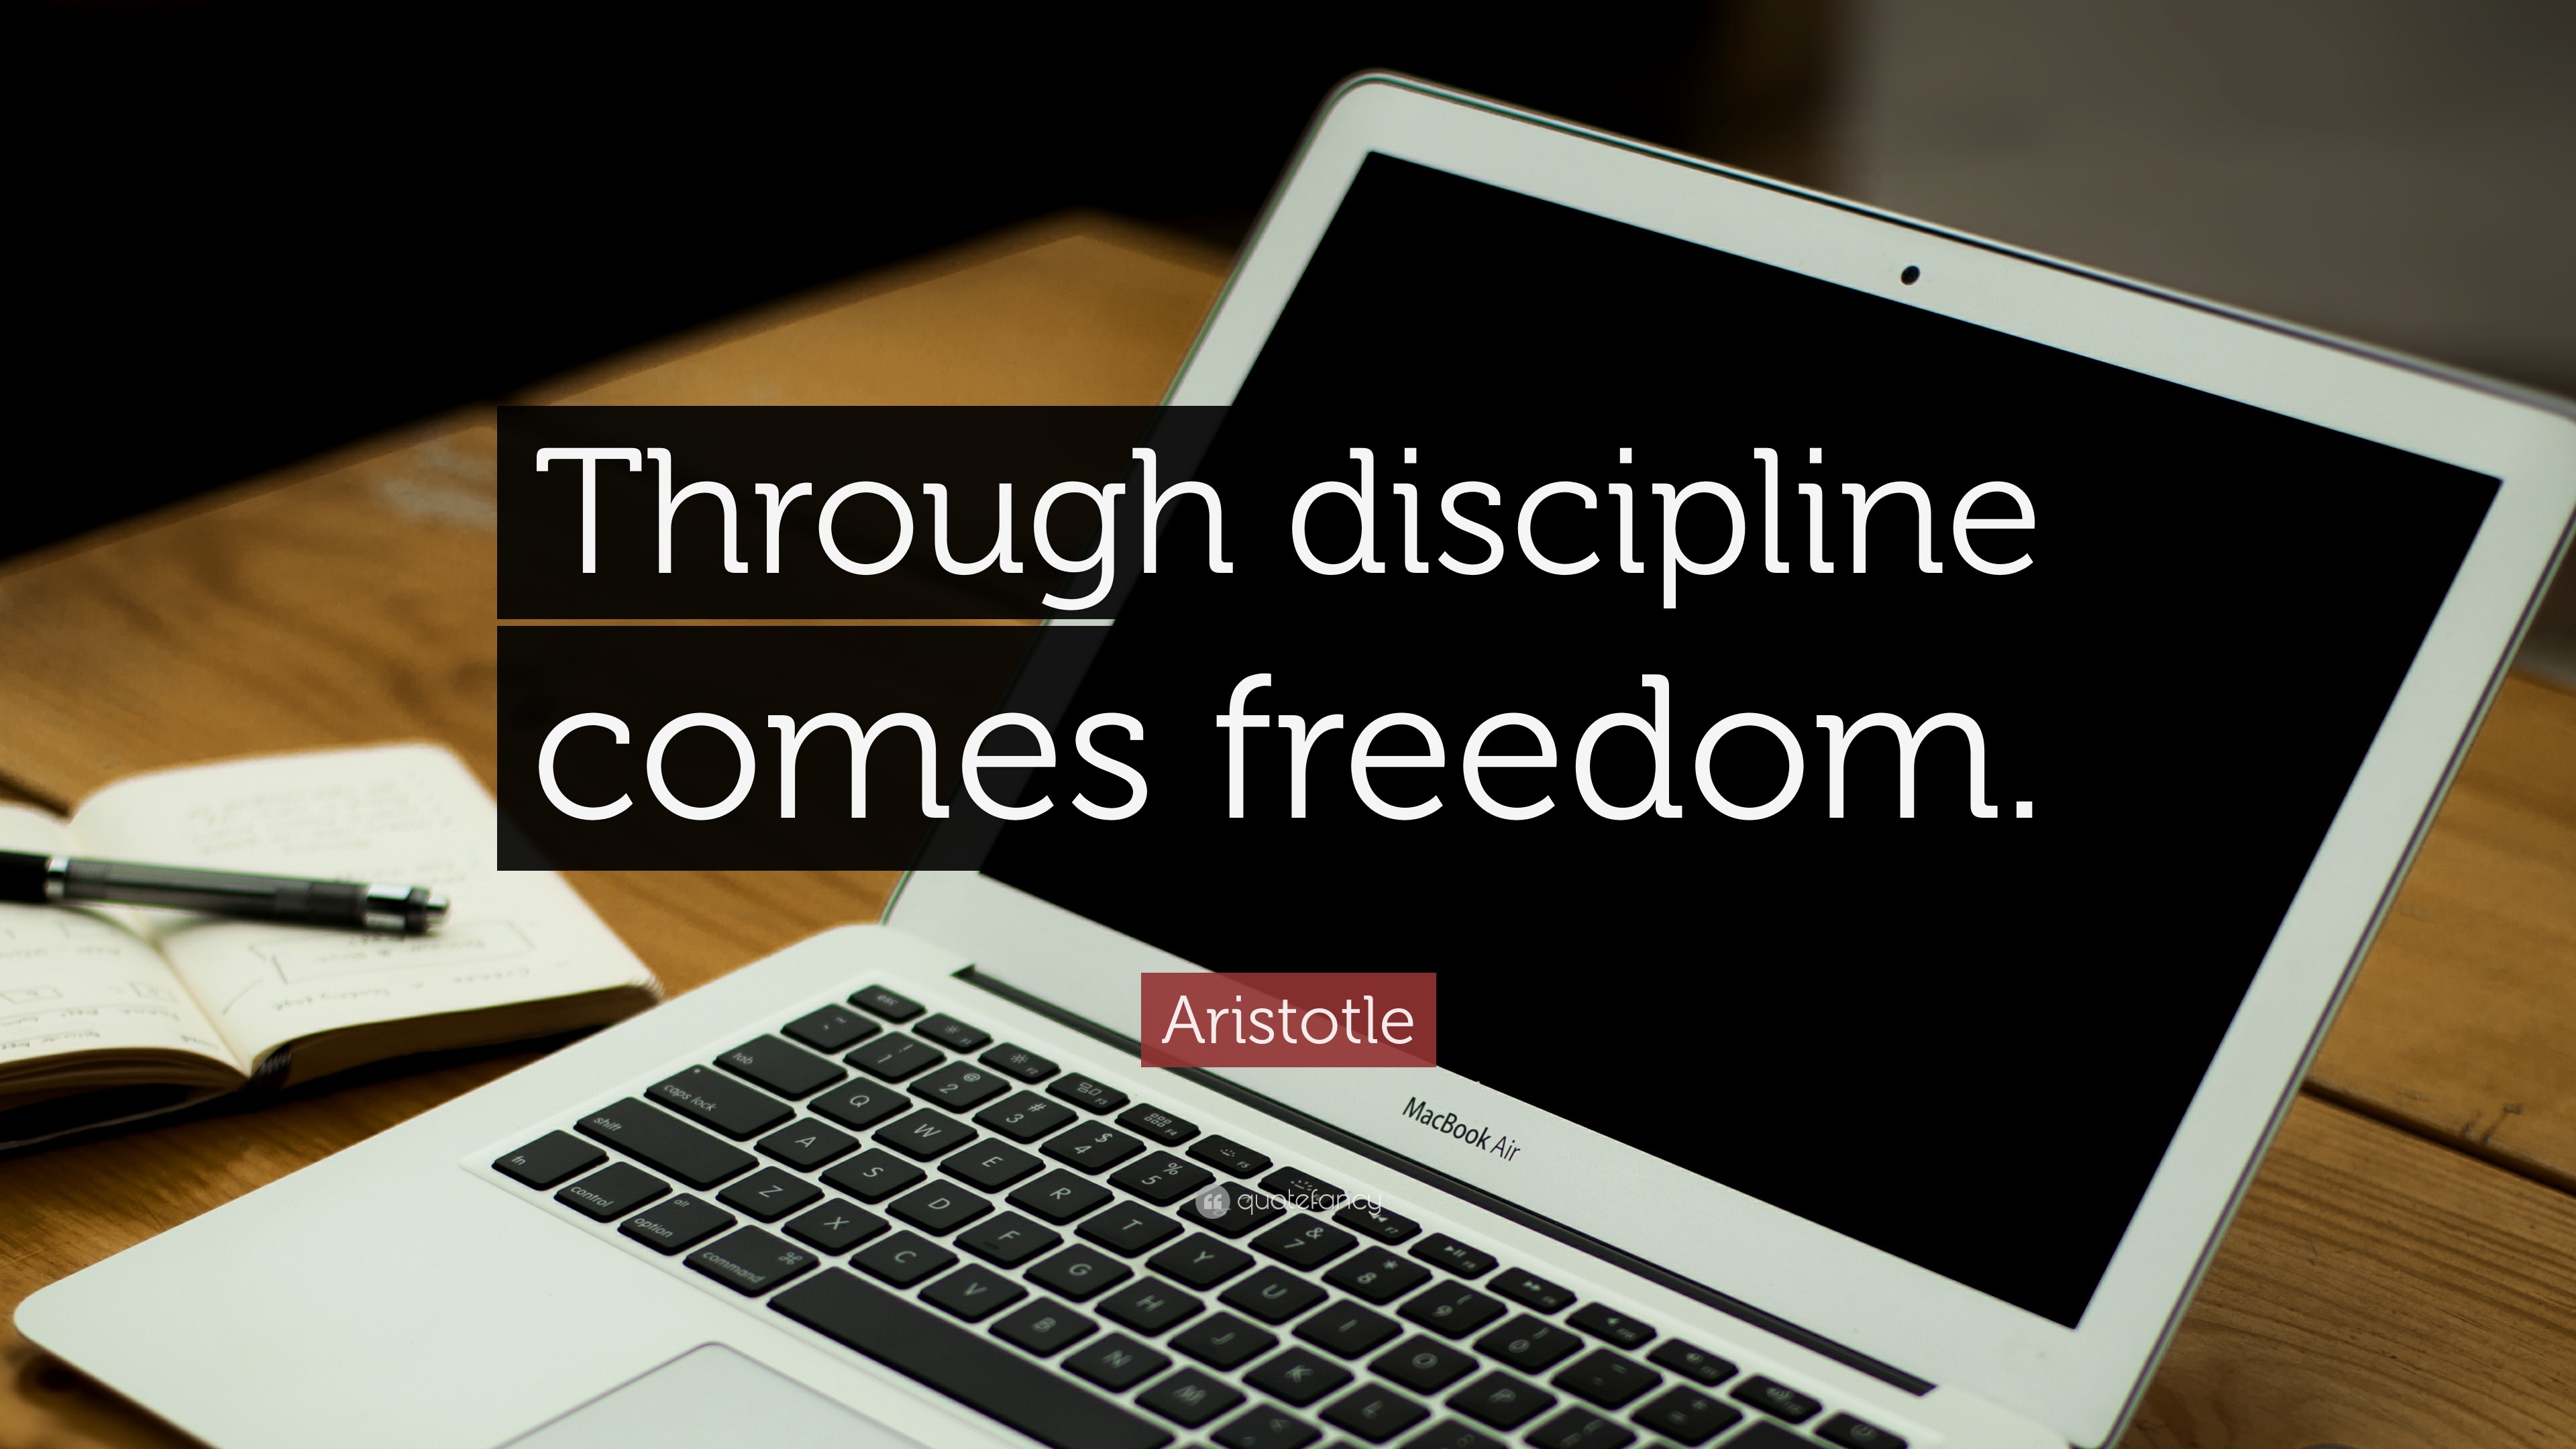 Aristotle Quote: “Through discipline comes freedom.”